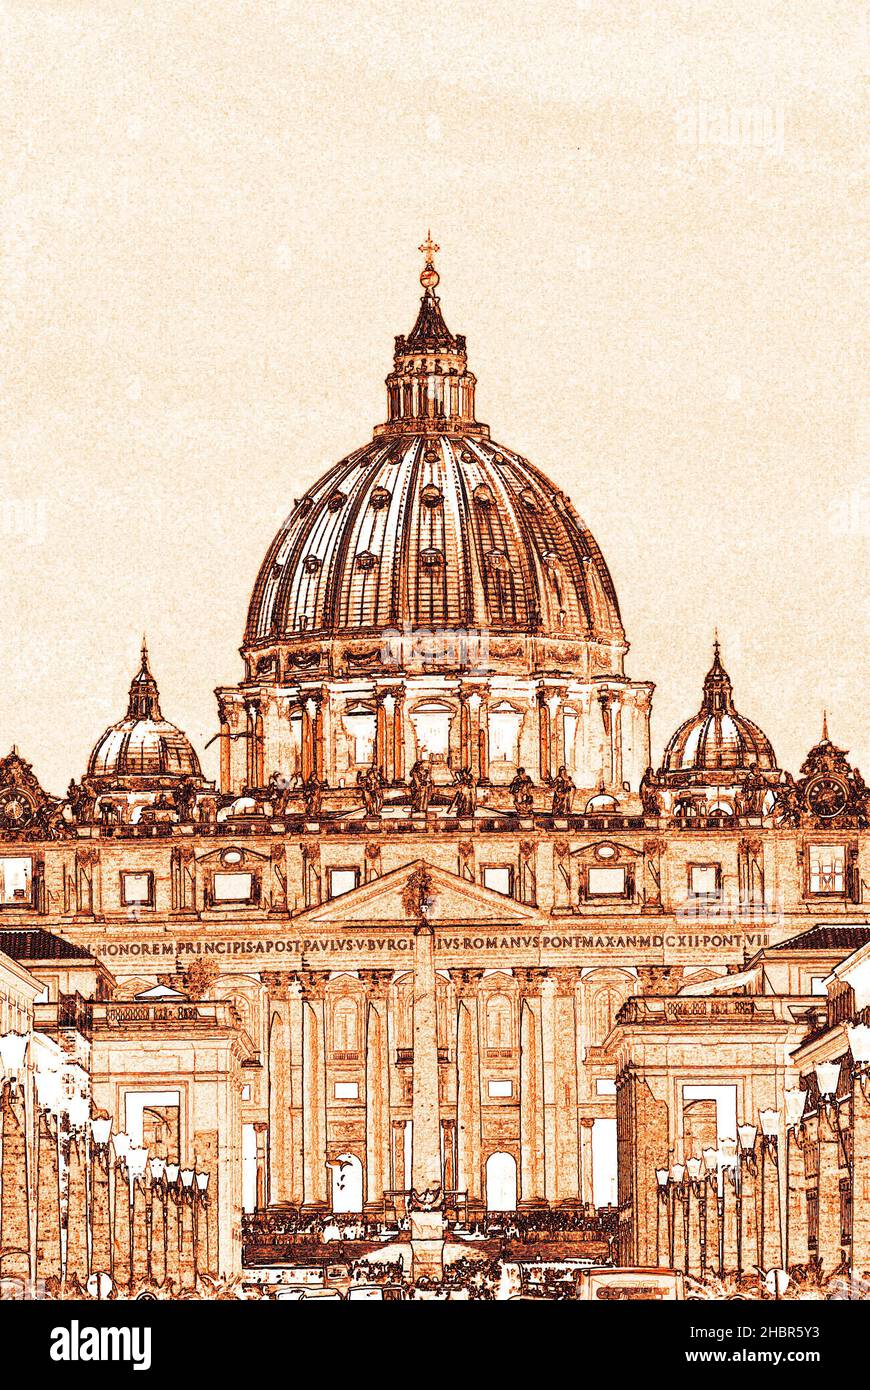 Saint Peter basilica, Vaticano, Roma, Italy Stock Photo